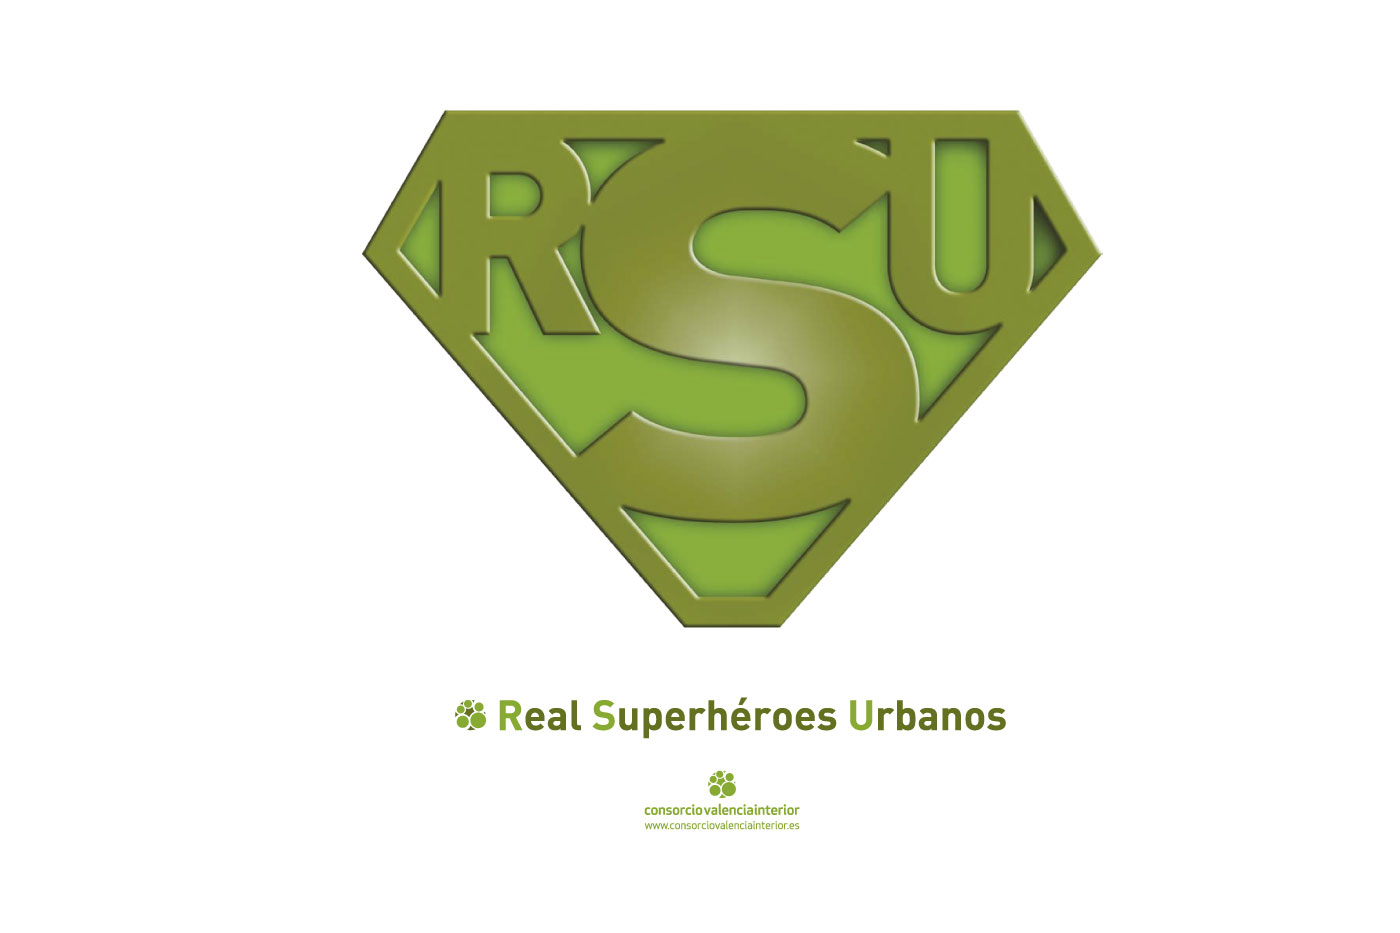 Real super heroes urbanos identidad grafica